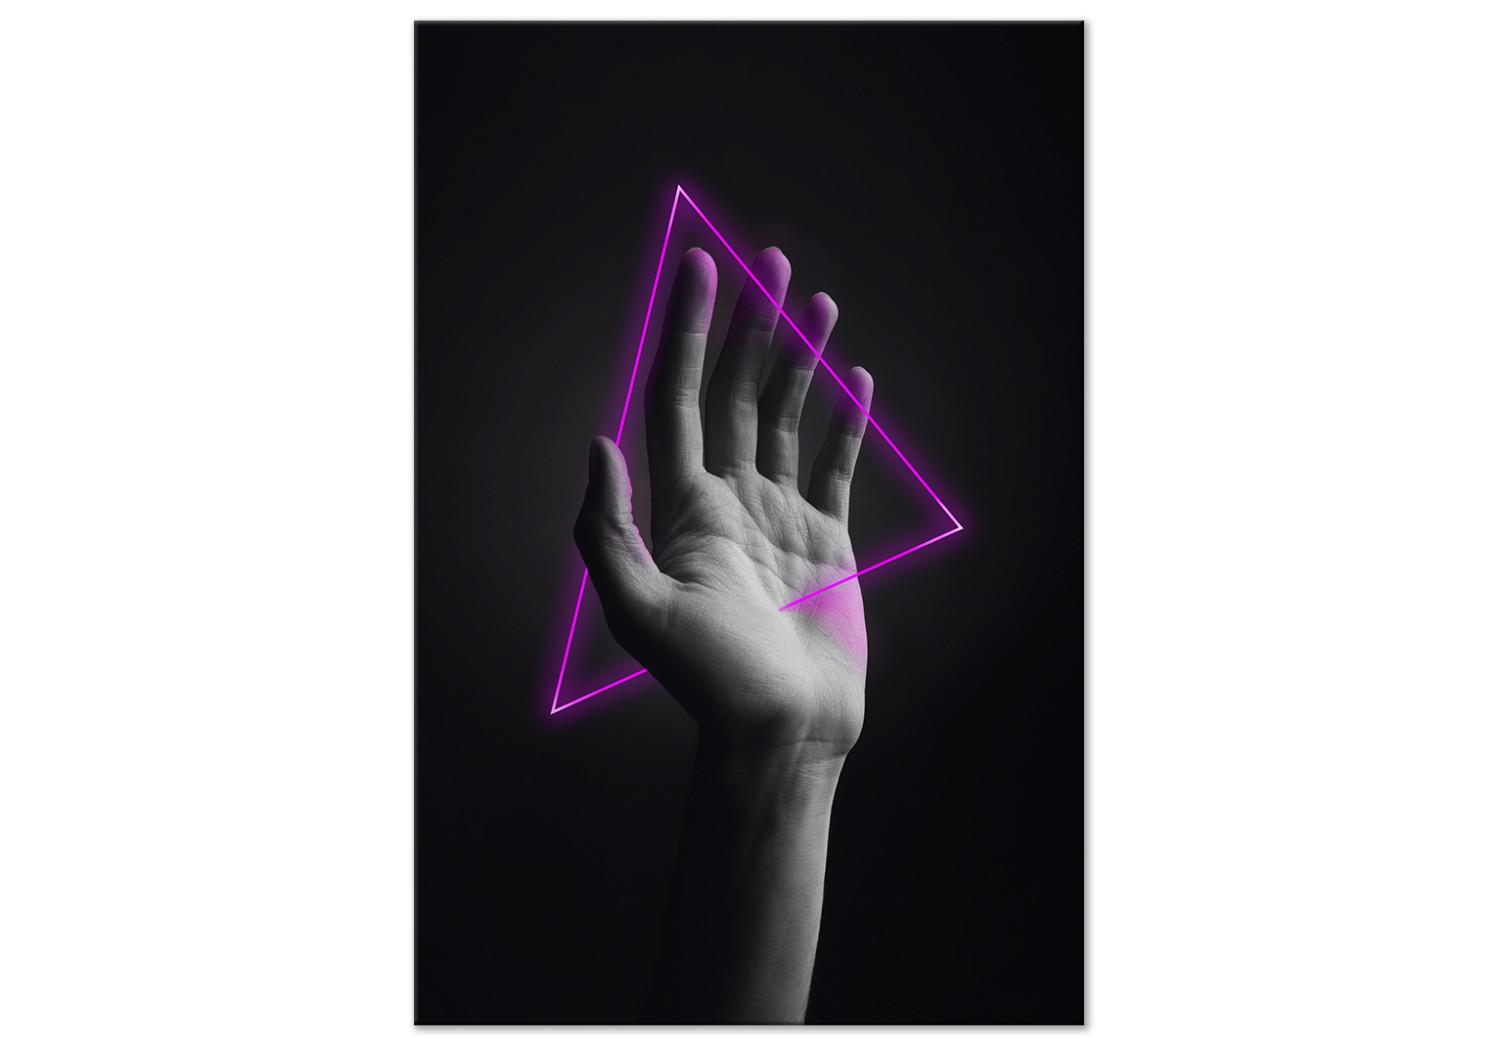 Cuadro Triángulo en la mano - figura de neón en la mano sobre un fondo negro